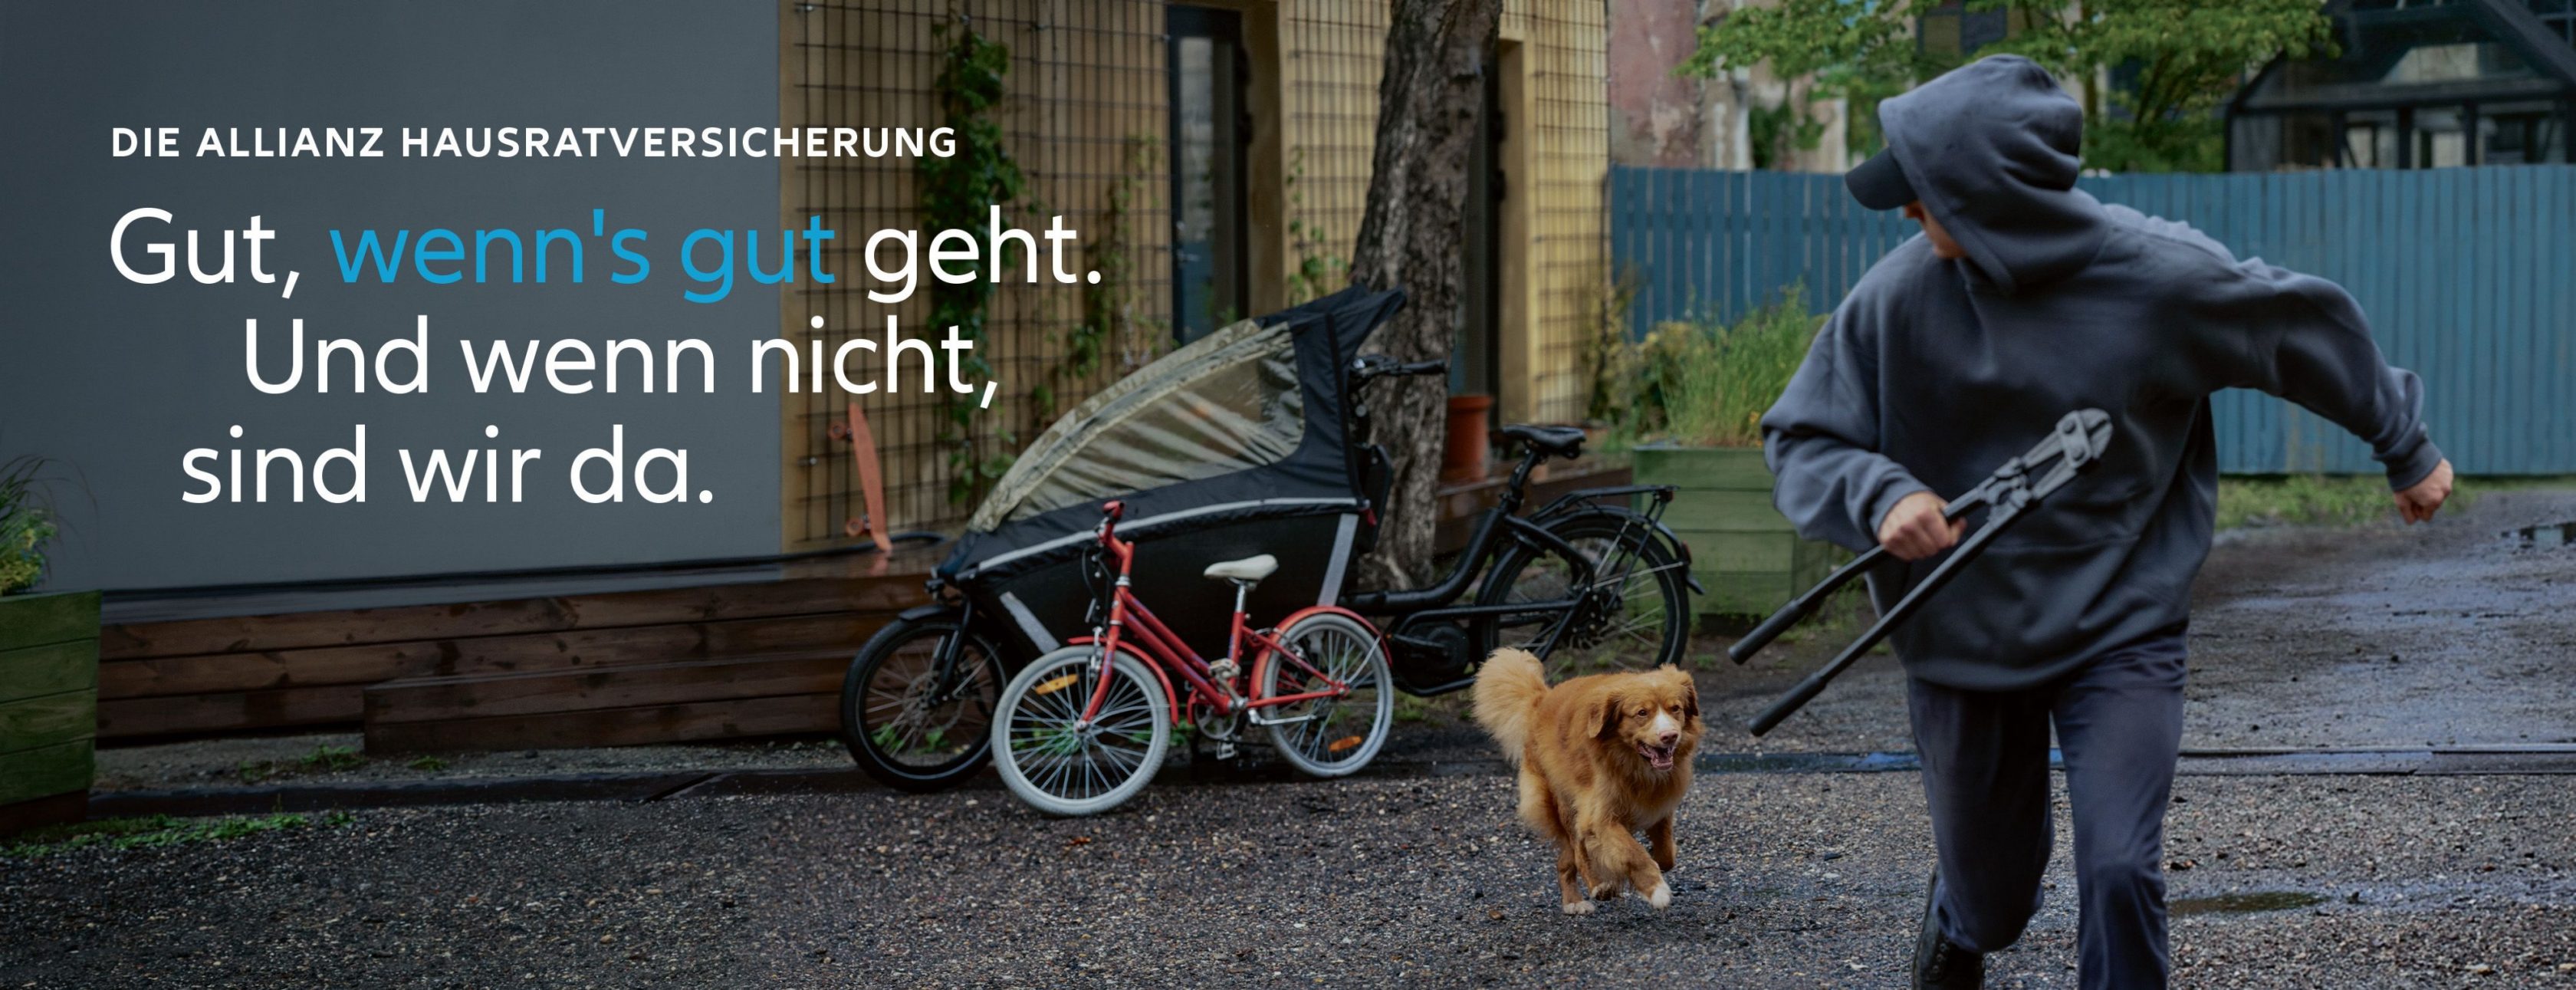 Allianz Versicherung Uwe Deichen Berlin - Einbrecher rennt vor Hund weg